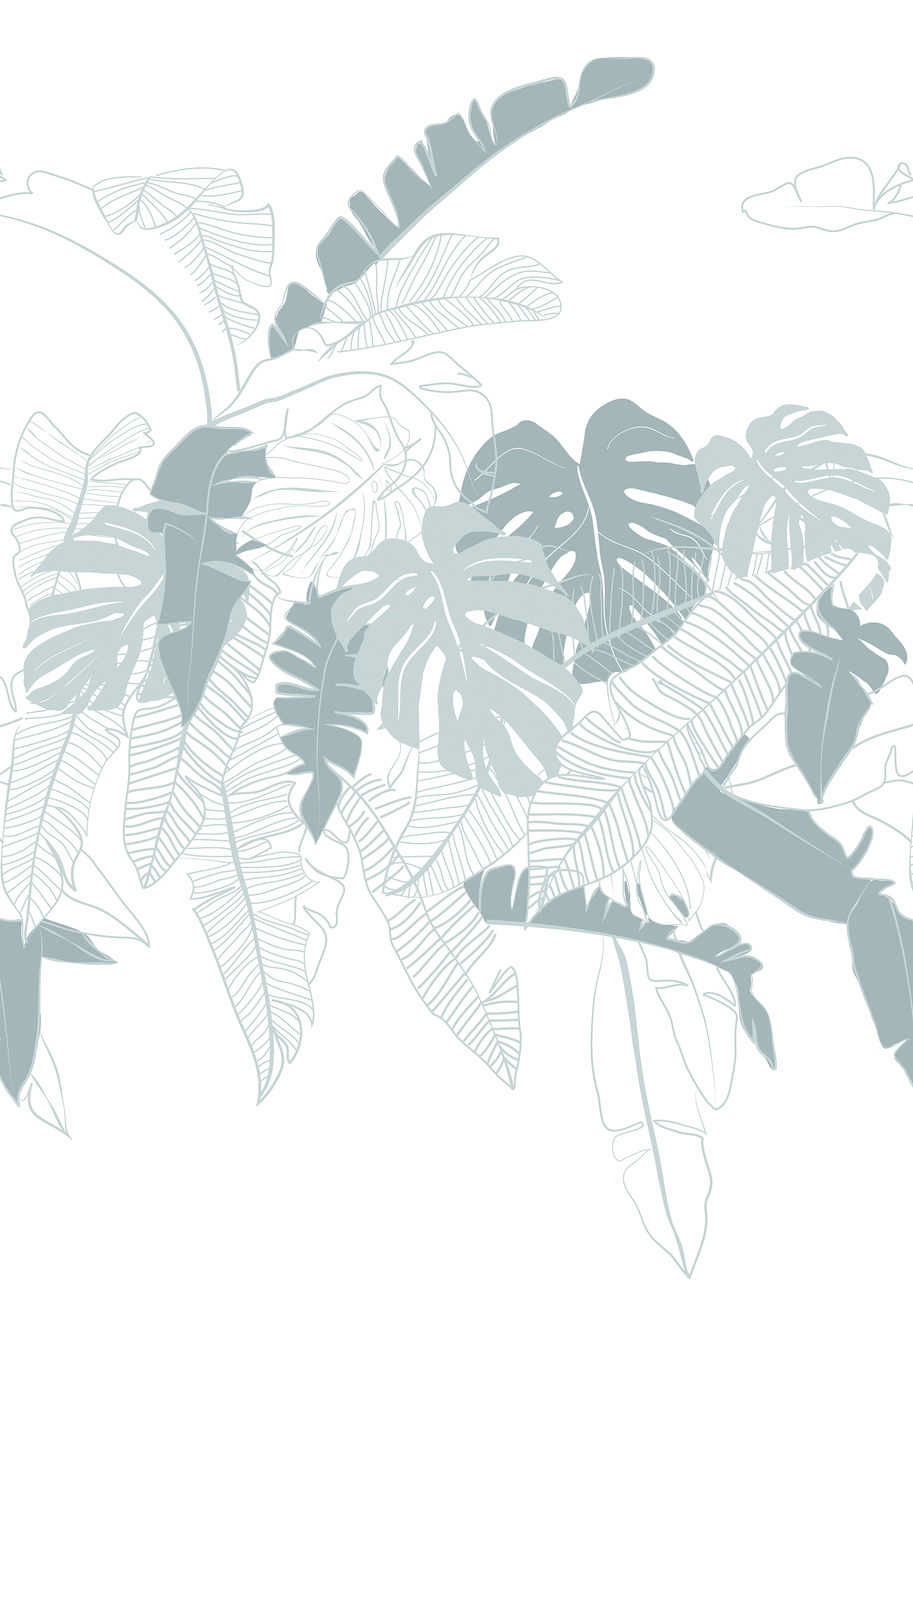             Jungle behang met palmblad motief - wit, grijs
        